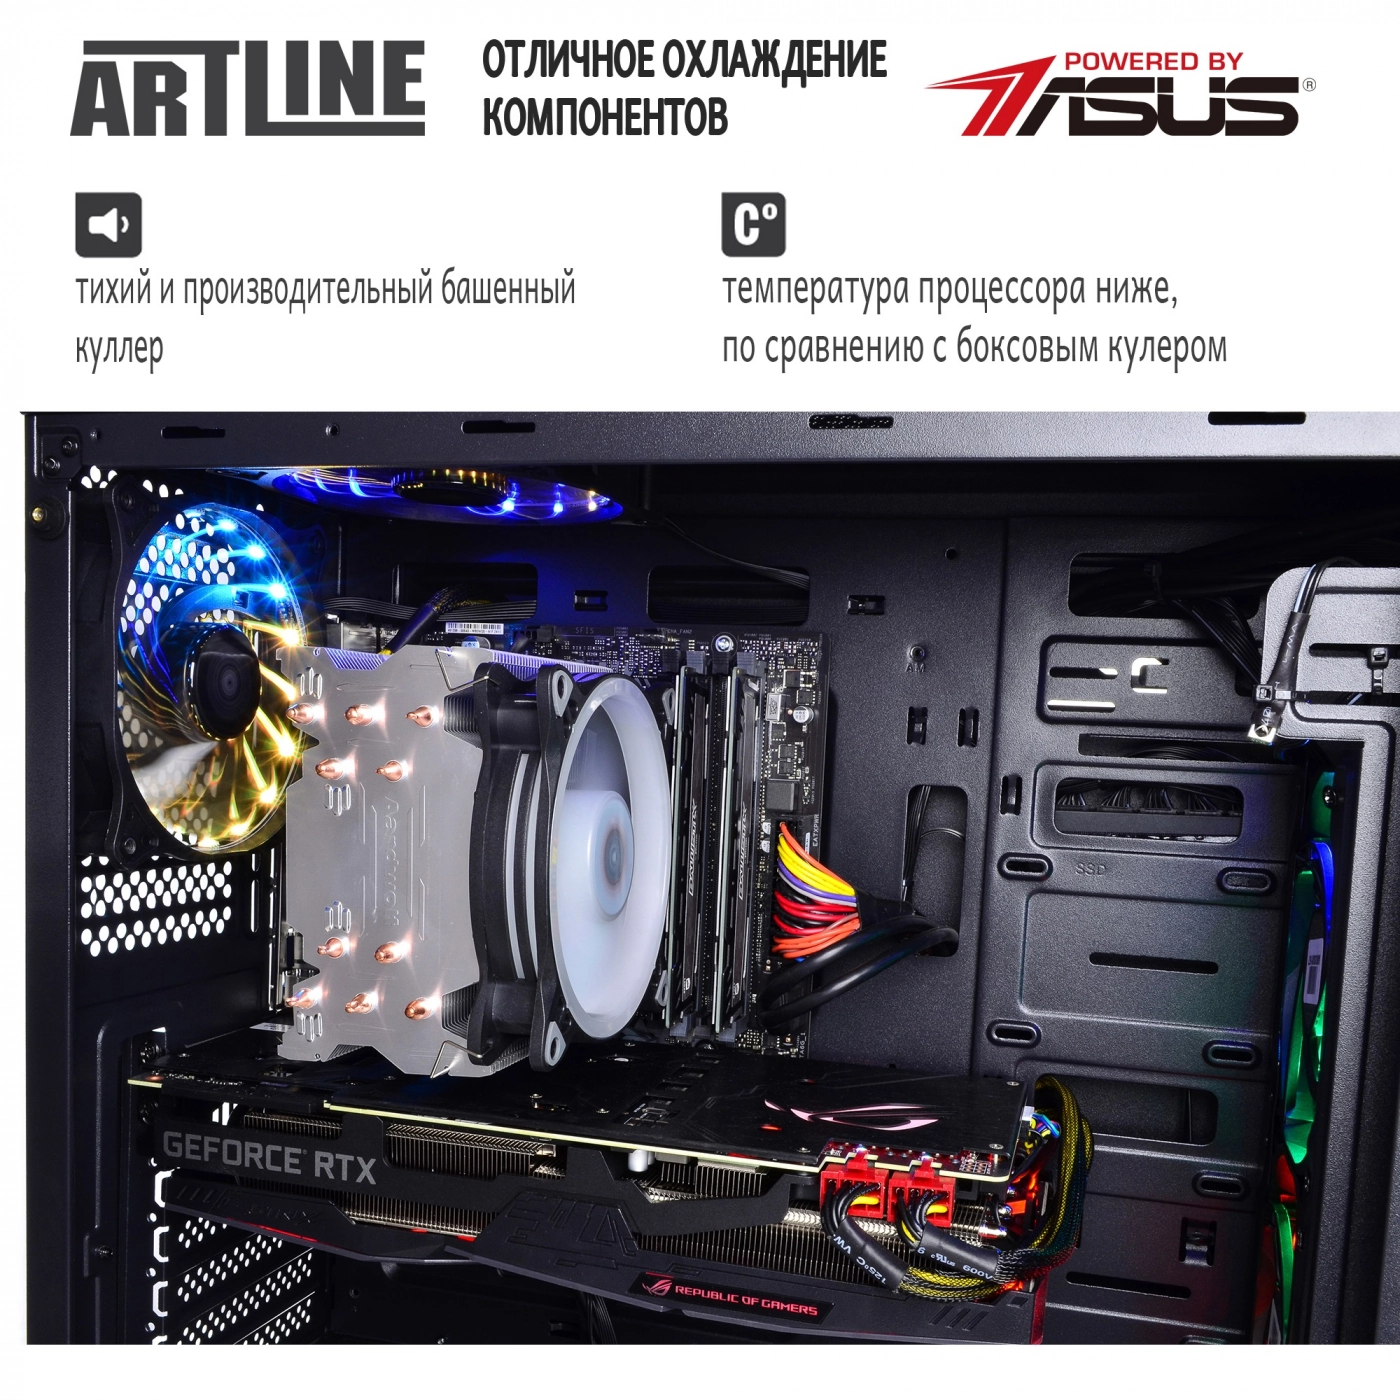 Купить Компьютер ARTLINE Gaming X95v20 - фото 6